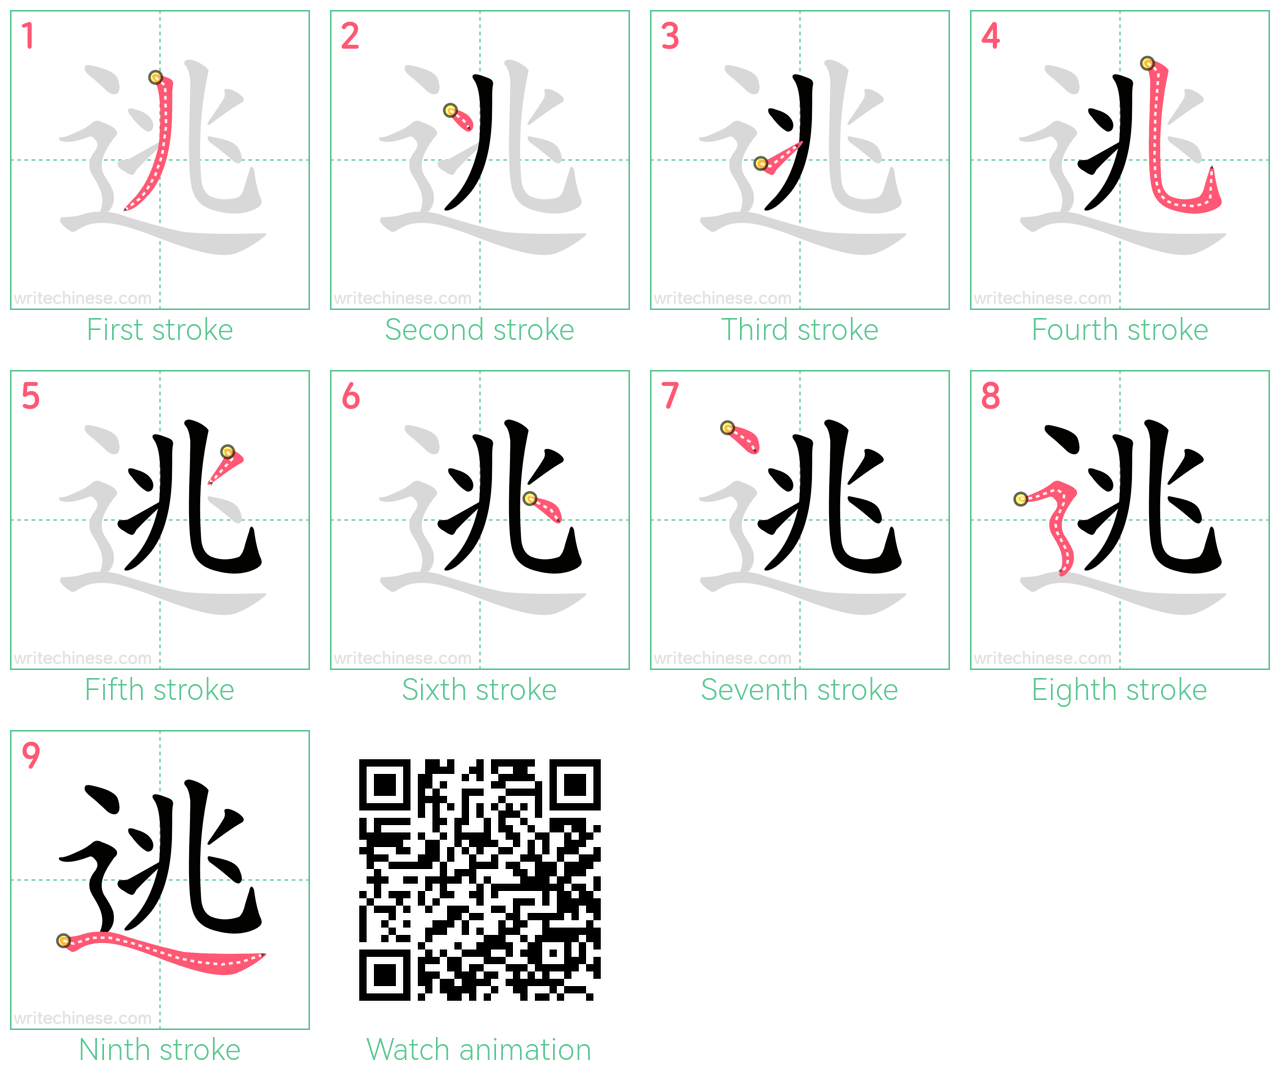 逃 step-by-step stroke order diagrams